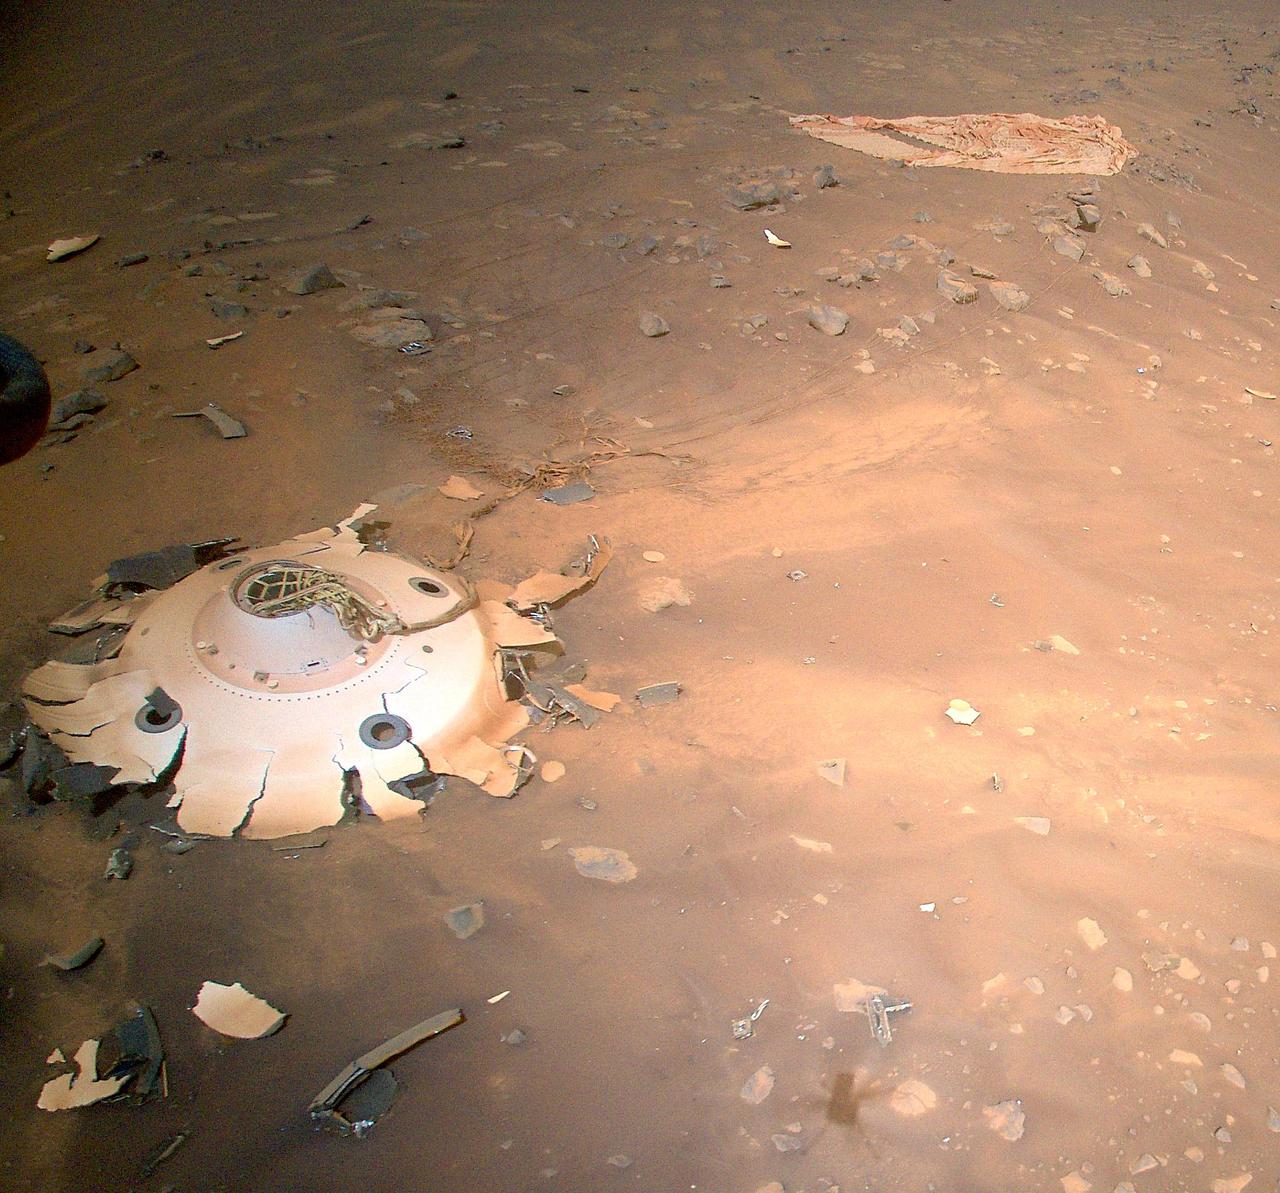 Voici les impressionnantes images du matériel qui a permis à Perseverance de se poser sur Mars